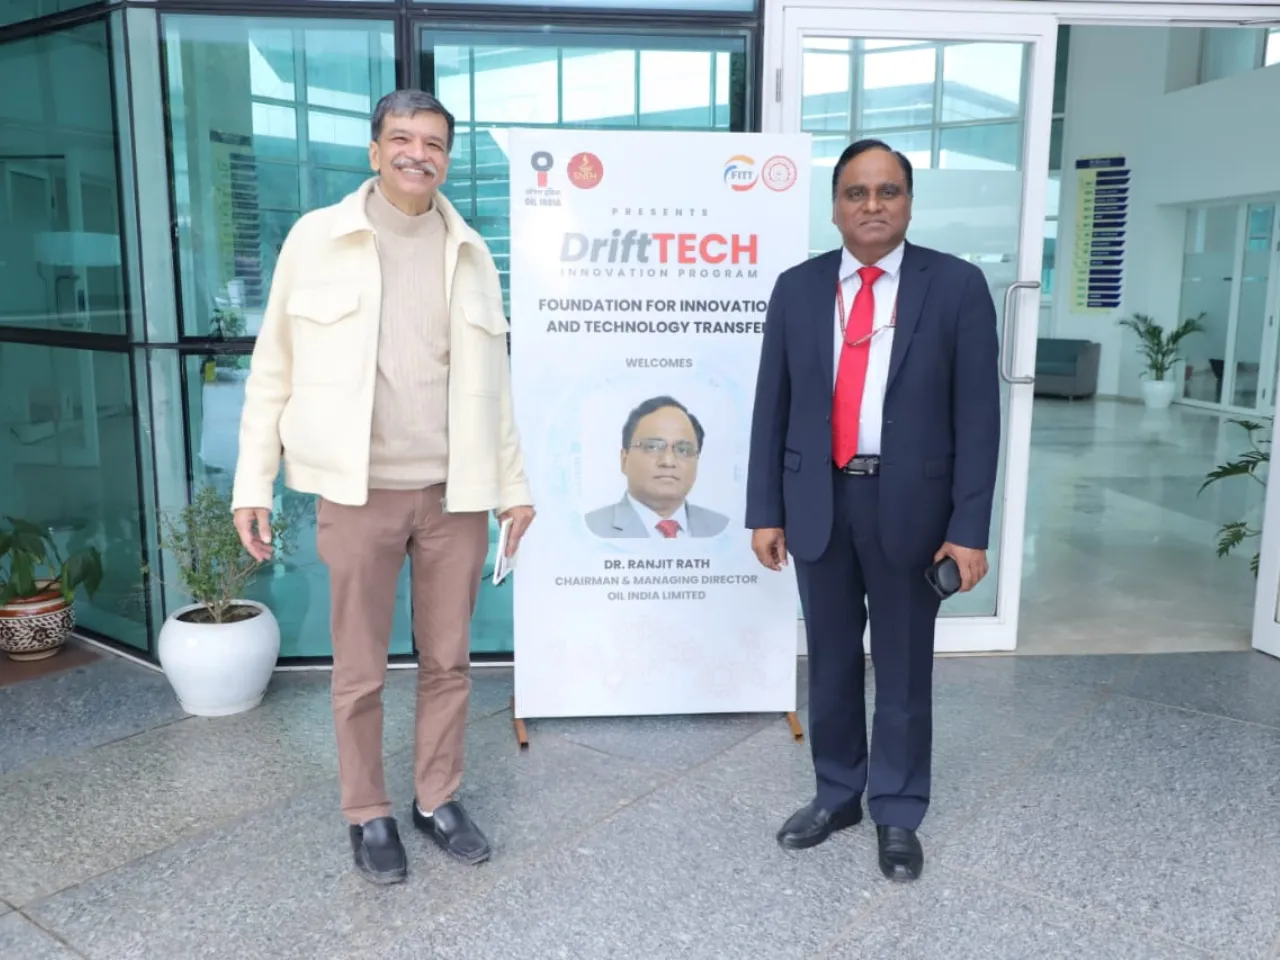 OIL IIT Delhi Launch DriftTECH to Boost Deep Tech Innovation